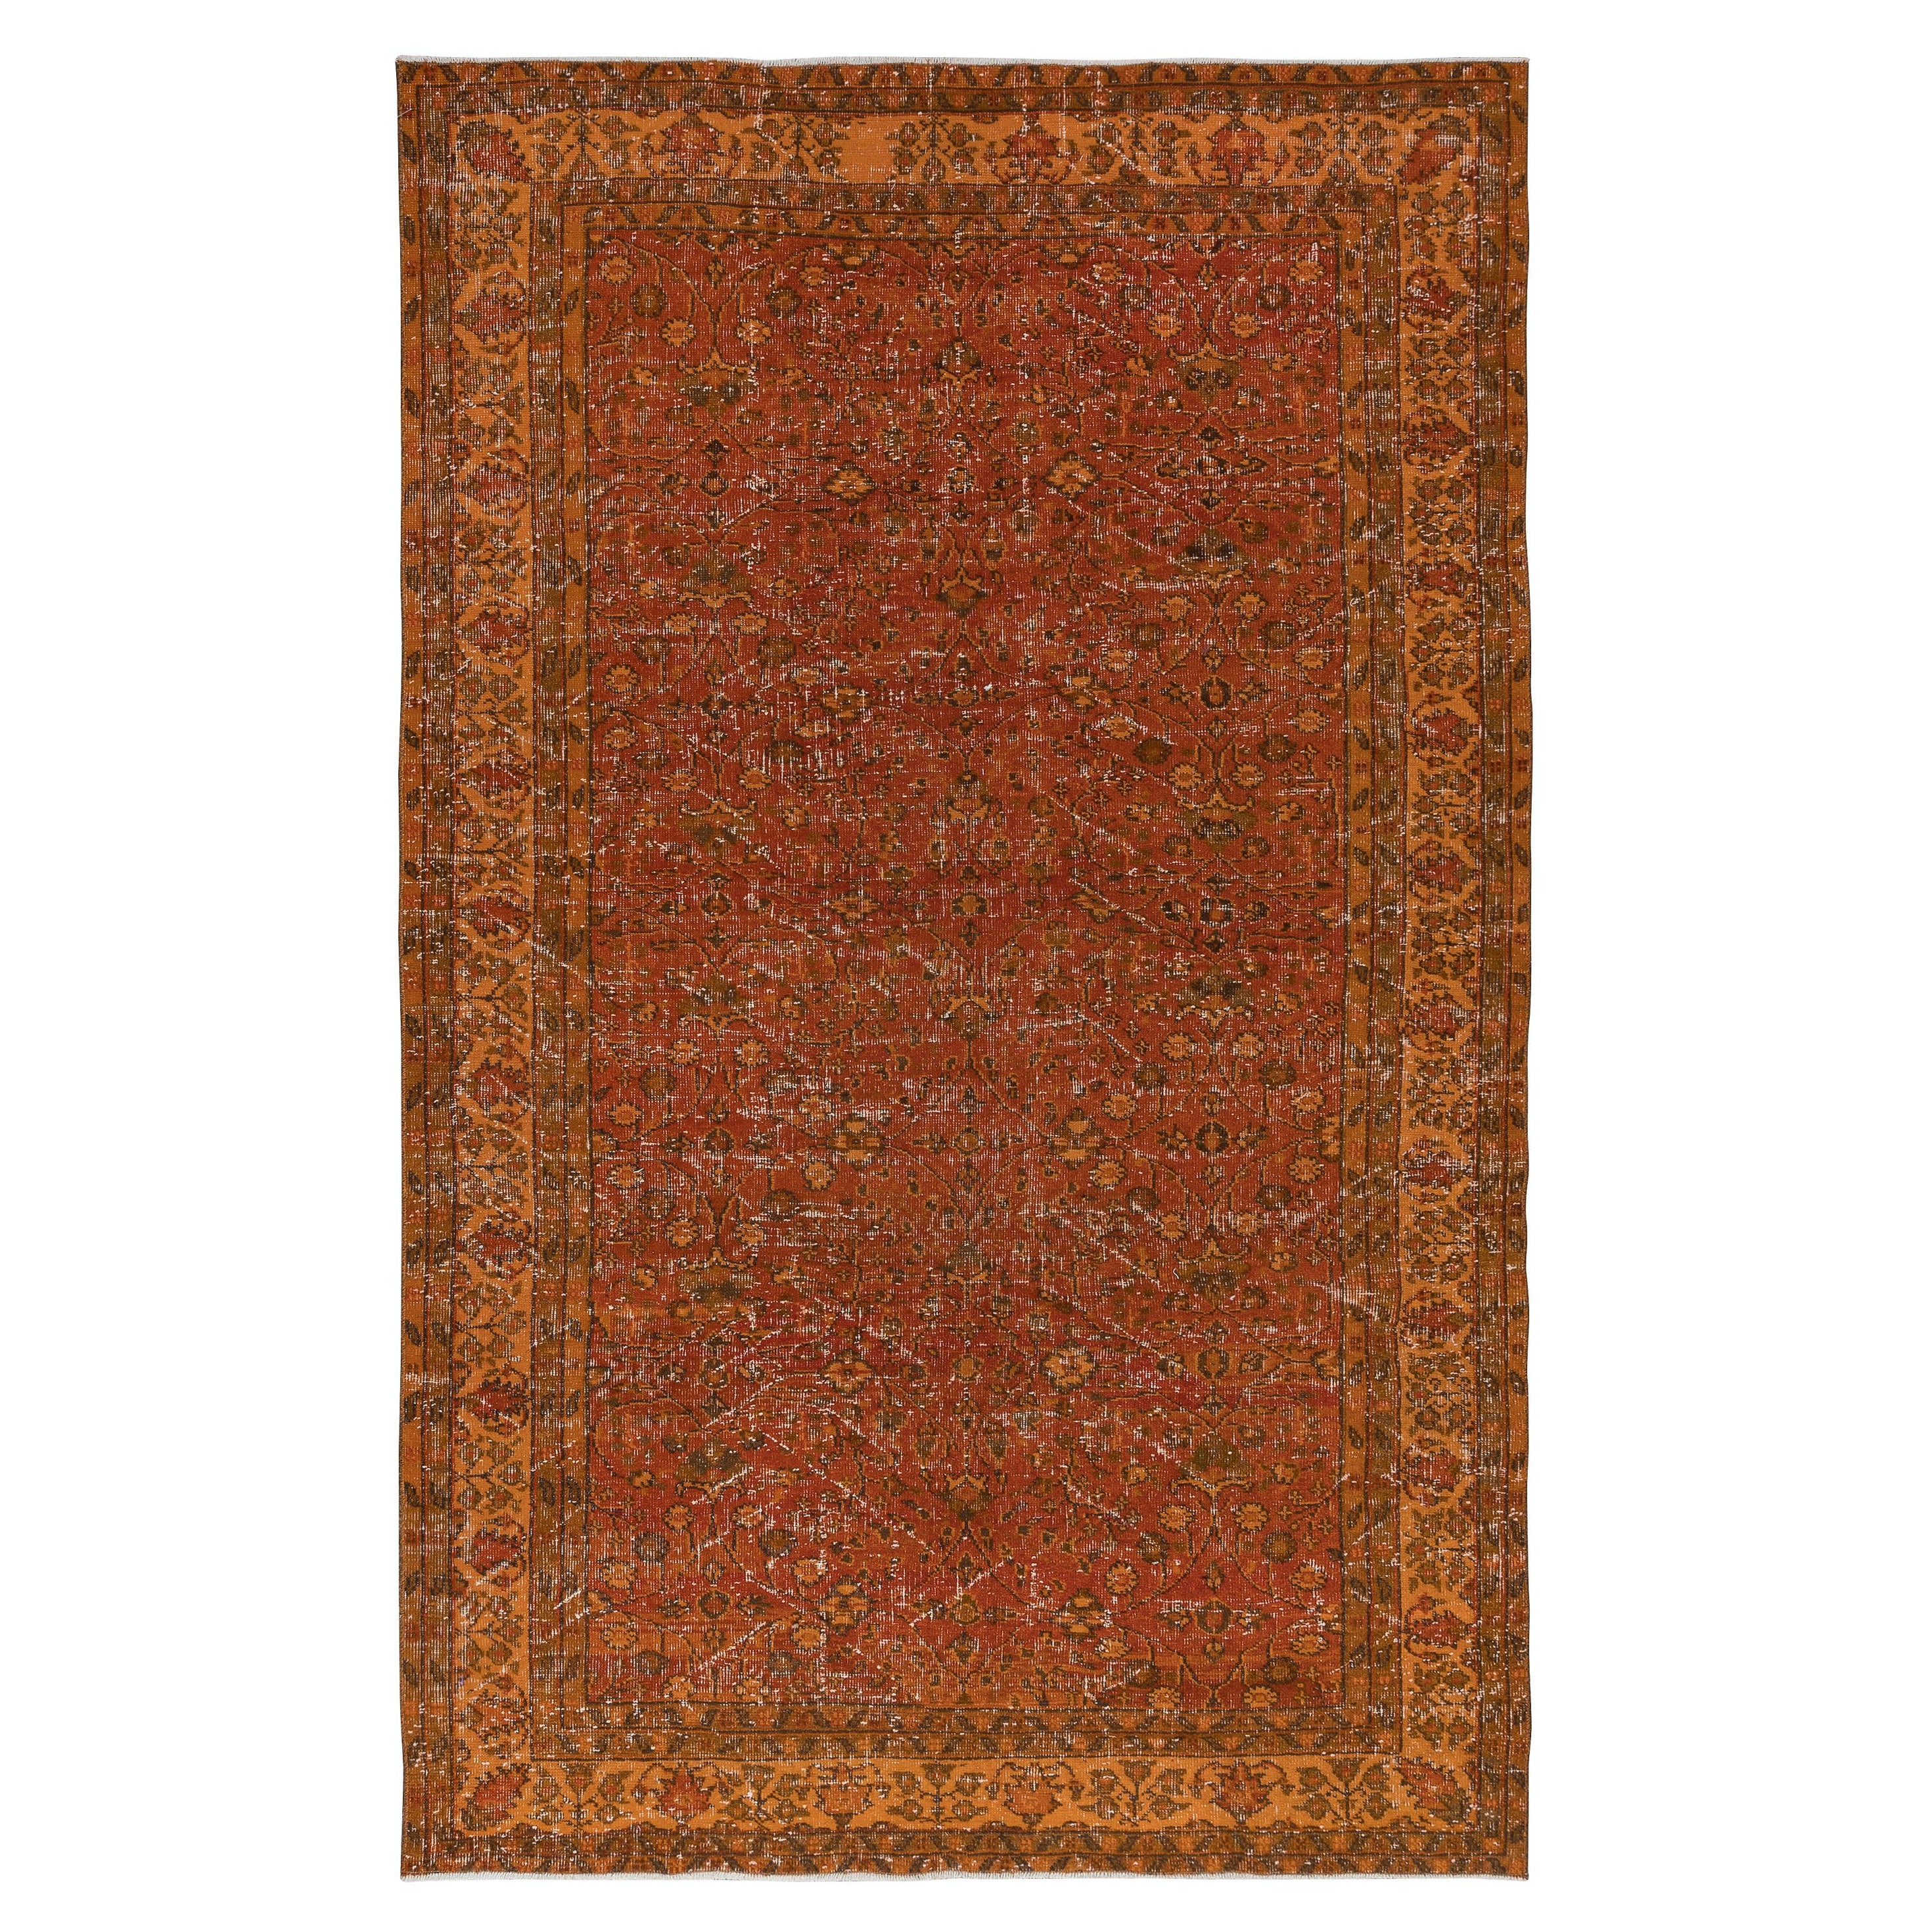 6x9.7 Ft Vivid Orange Turkish Rug, Vibrant Colored Handmade Bohem Carpet (Tapis turc fait main aux couleurs vives) en vente